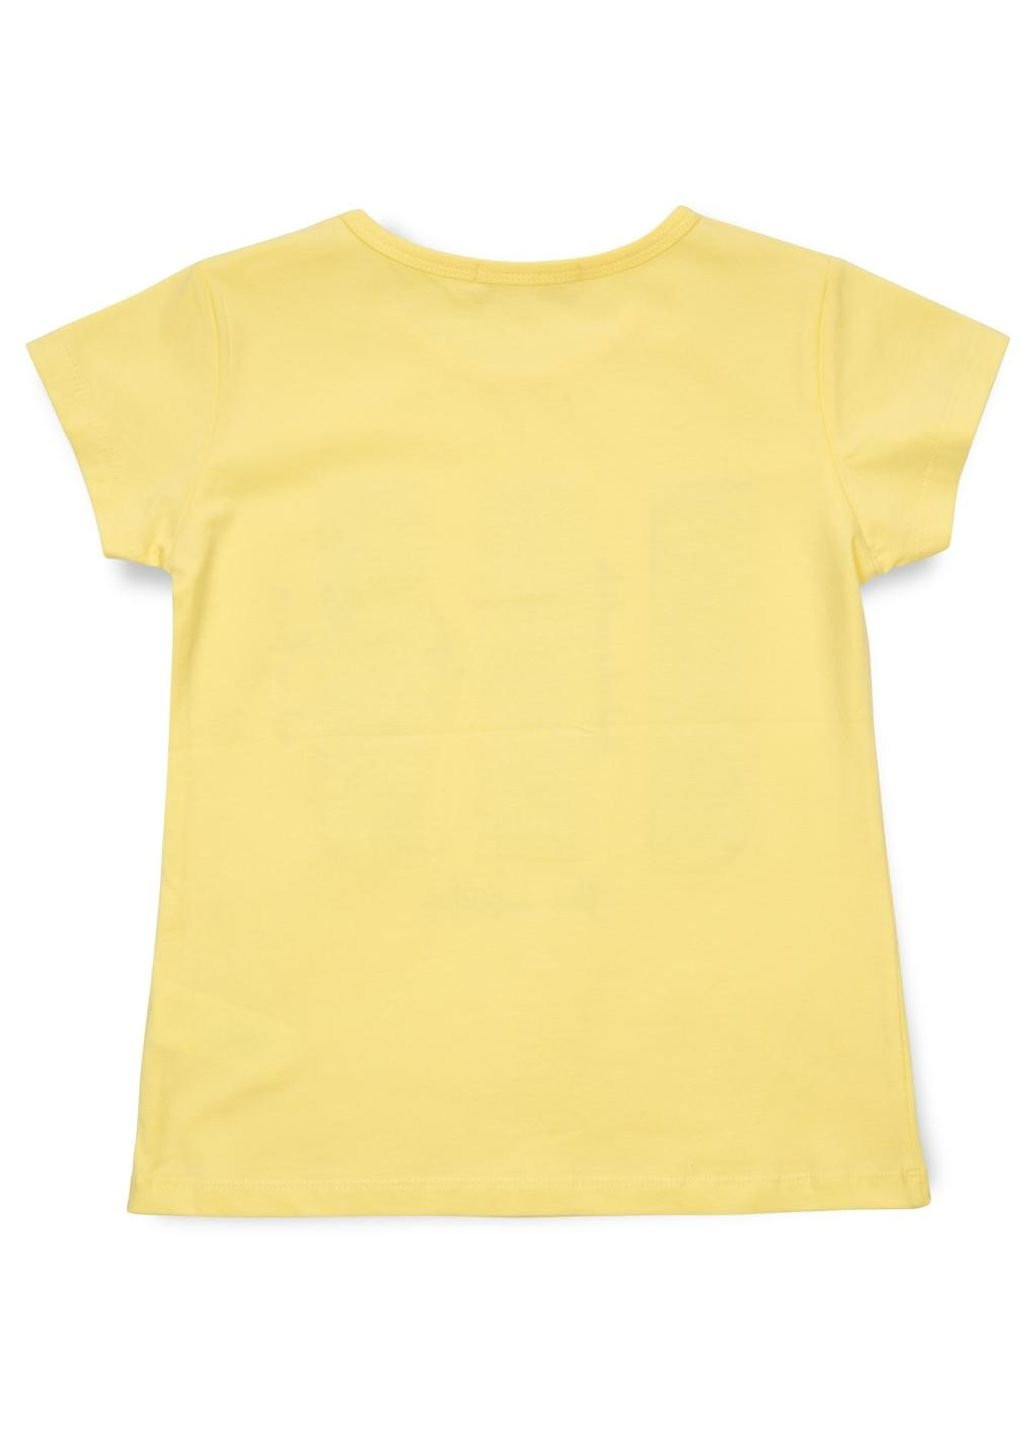 Жовта демісезонна футболка дитяча з паєтками (14299-134g-yellow) Breeze